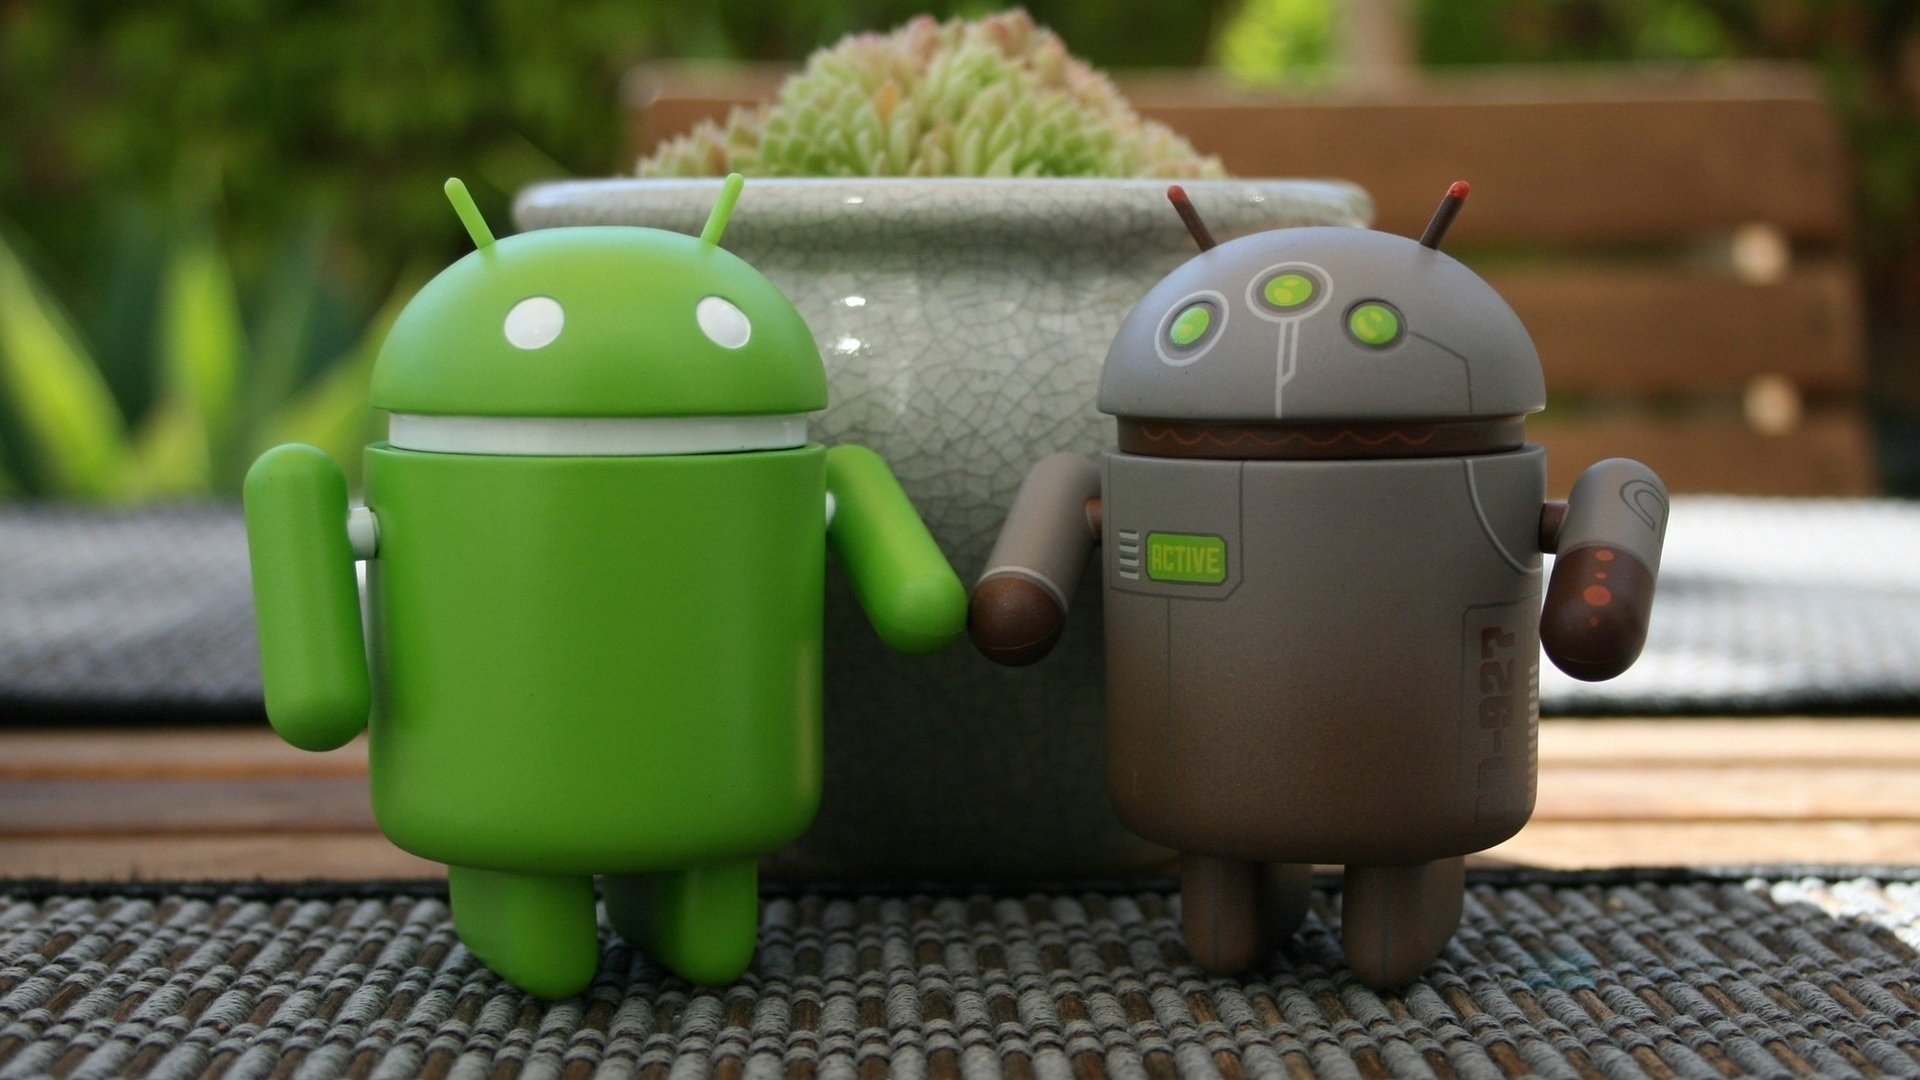 Android continua a ter problemas com fragmentação no seu ecossistema